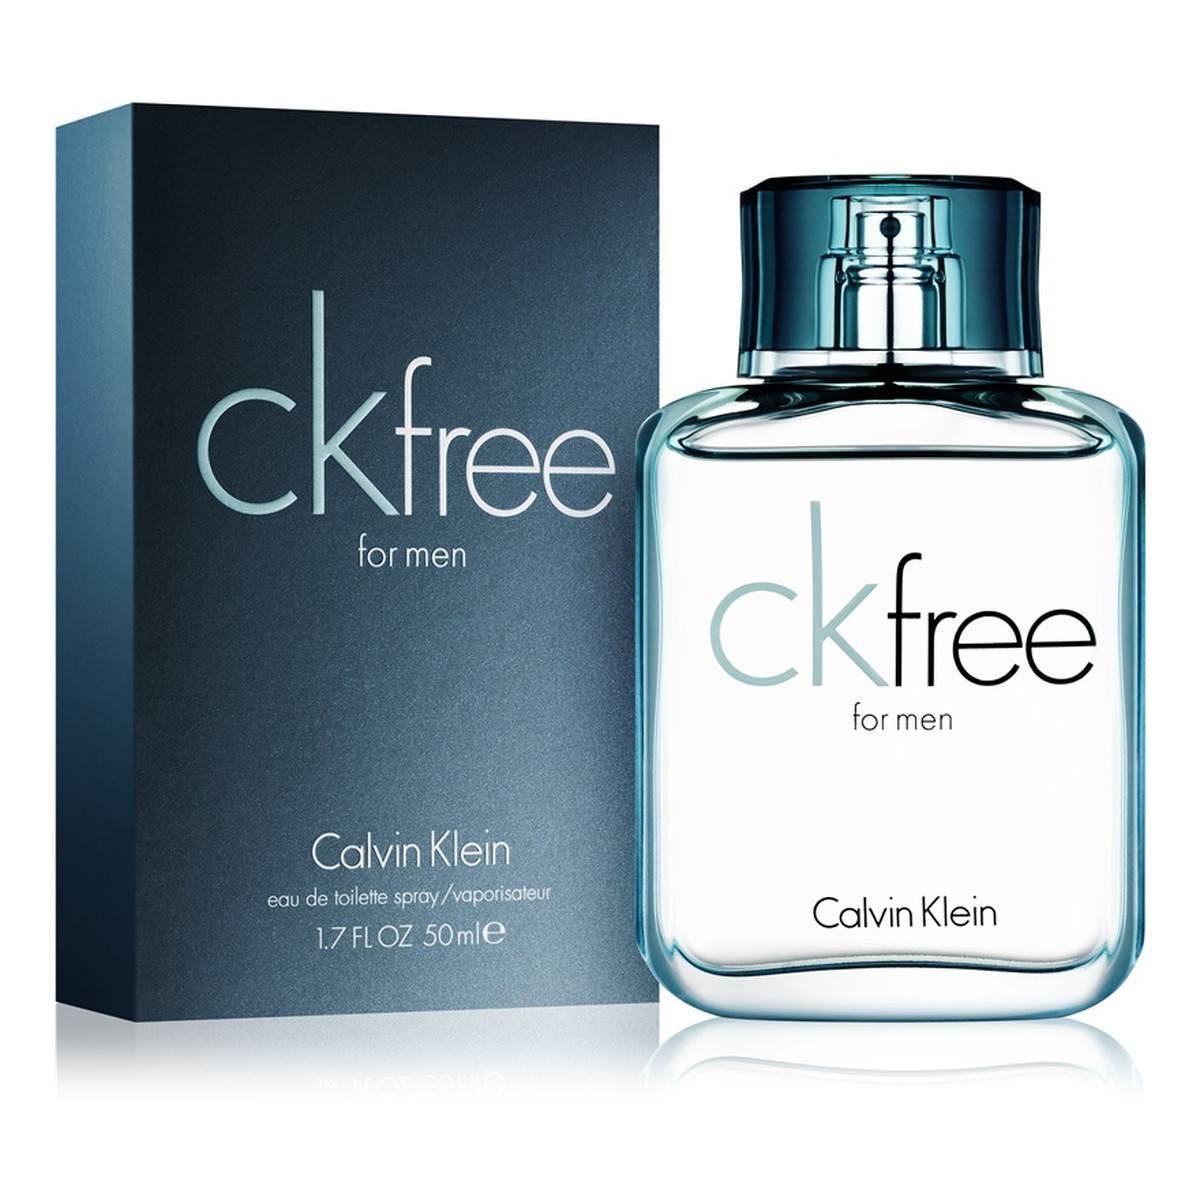 Calvin Klein CK Free woda toaletowa dla mężczyzn 50ml